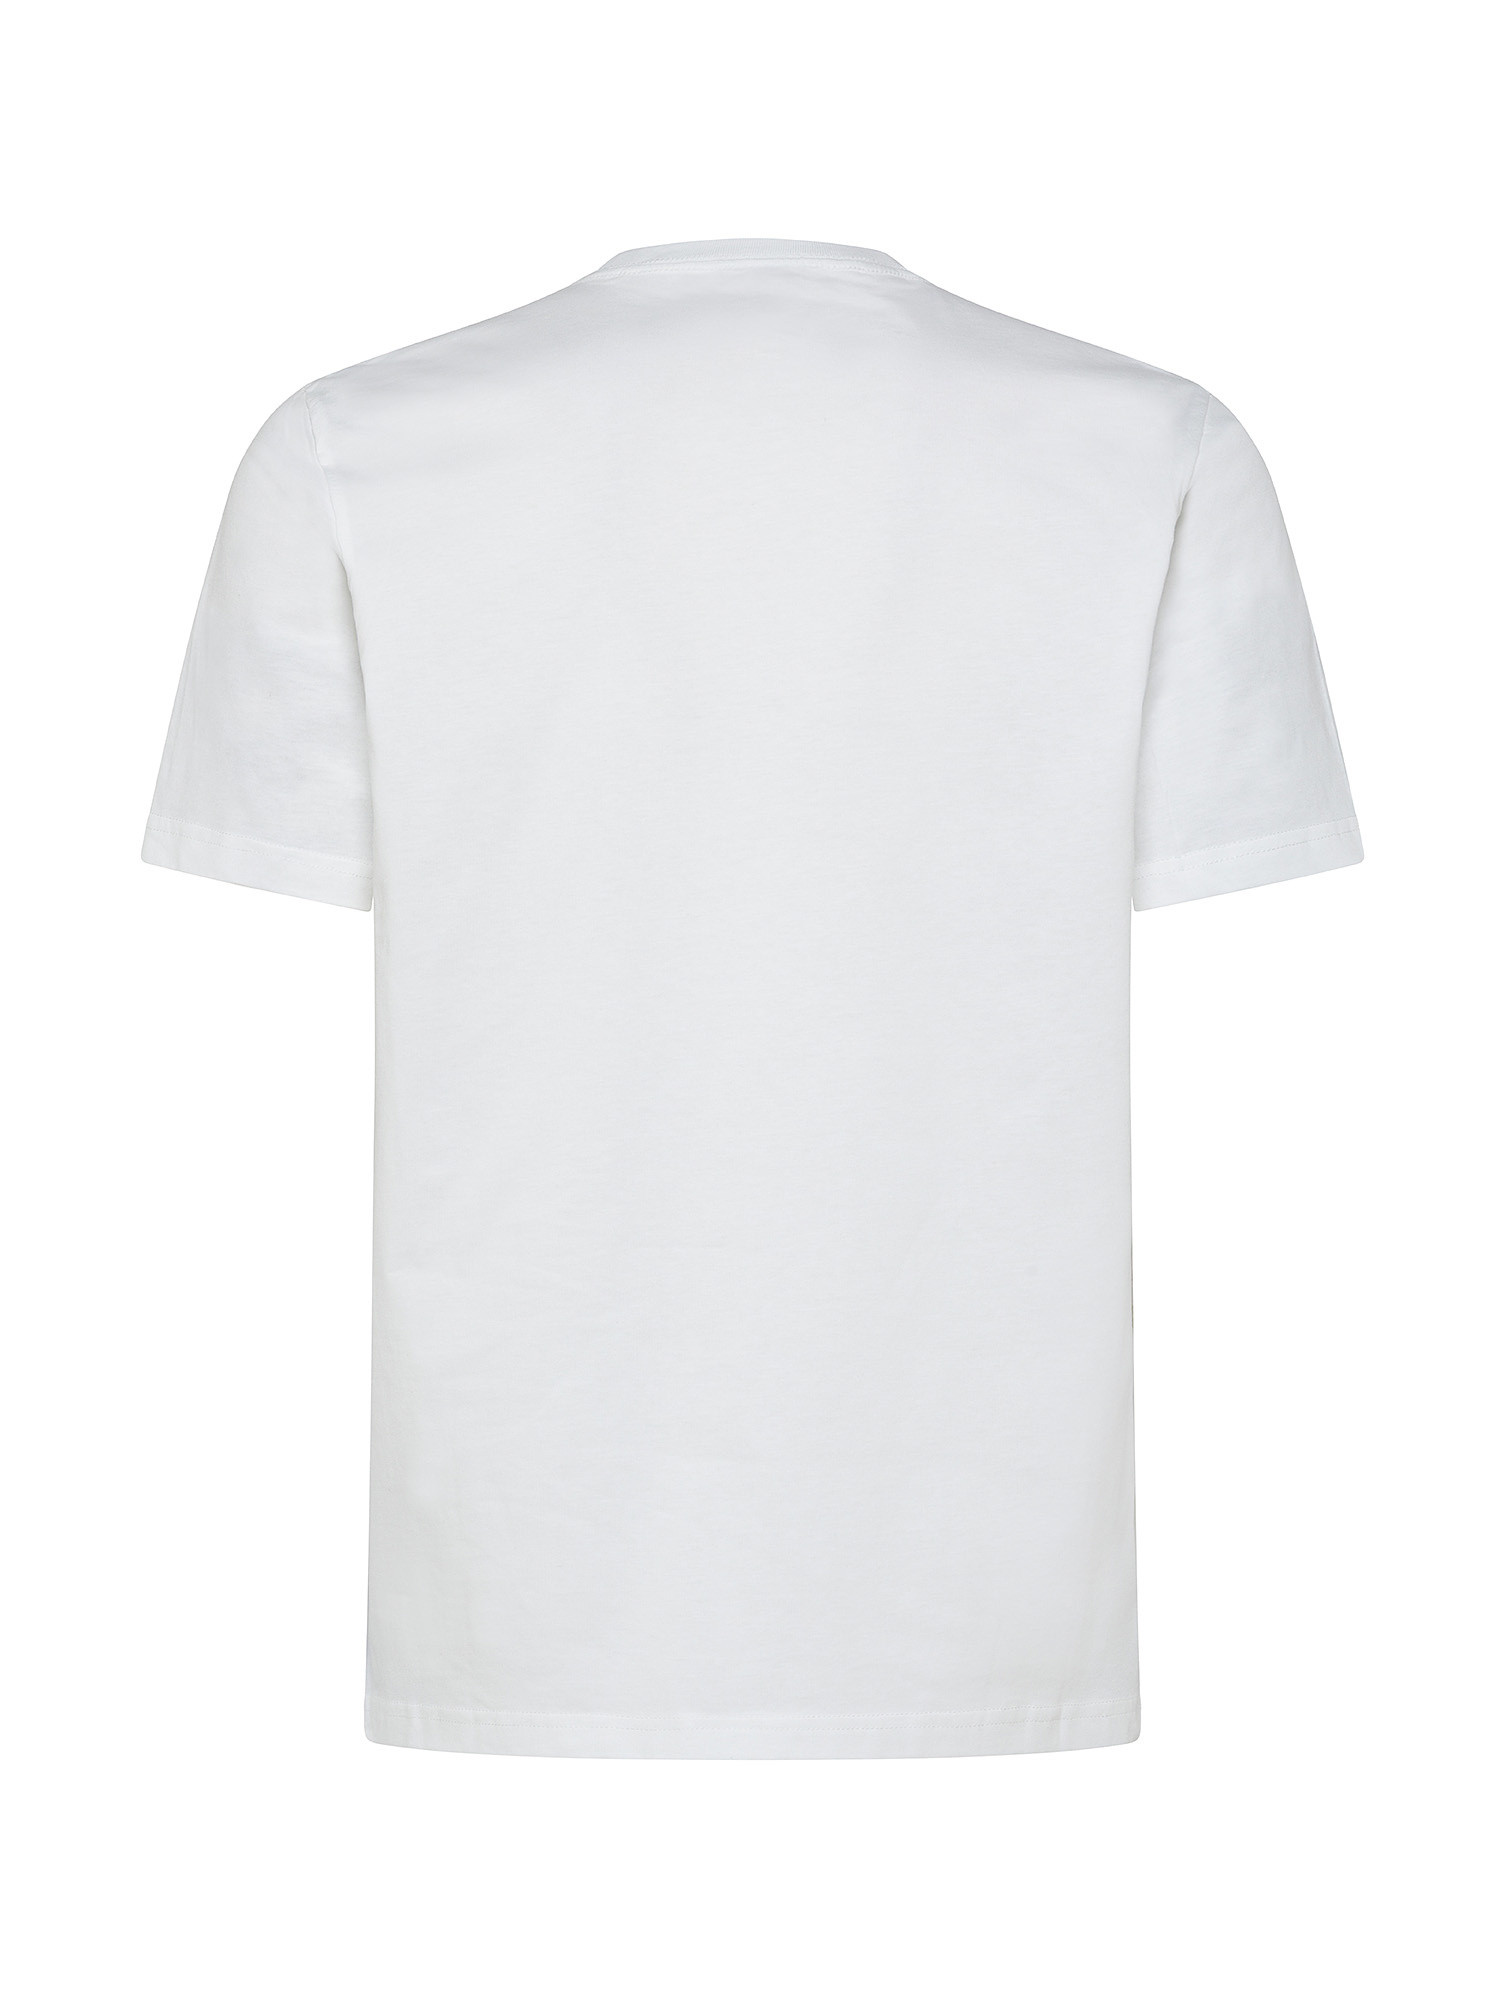 Paul Smith - T-shirt in cotone con stampa tappi di bottiglia, Bianco, large image number 1